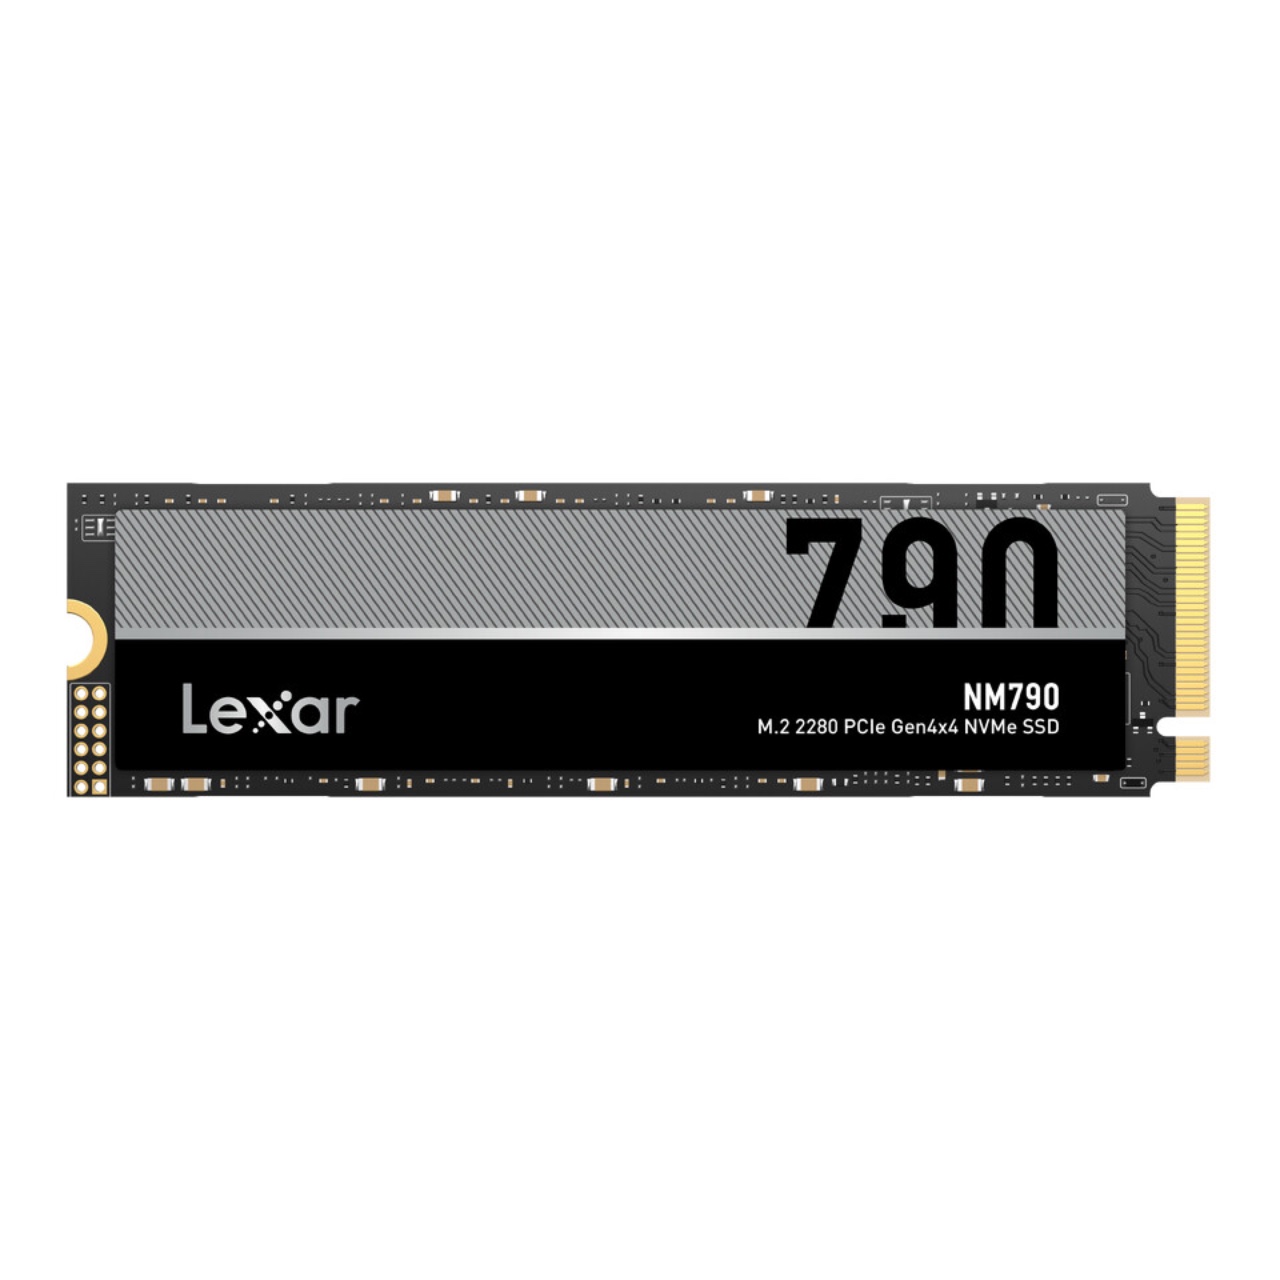 Lexar NM790 M.2 2280 PCIe Gen 44 NVMe SSD